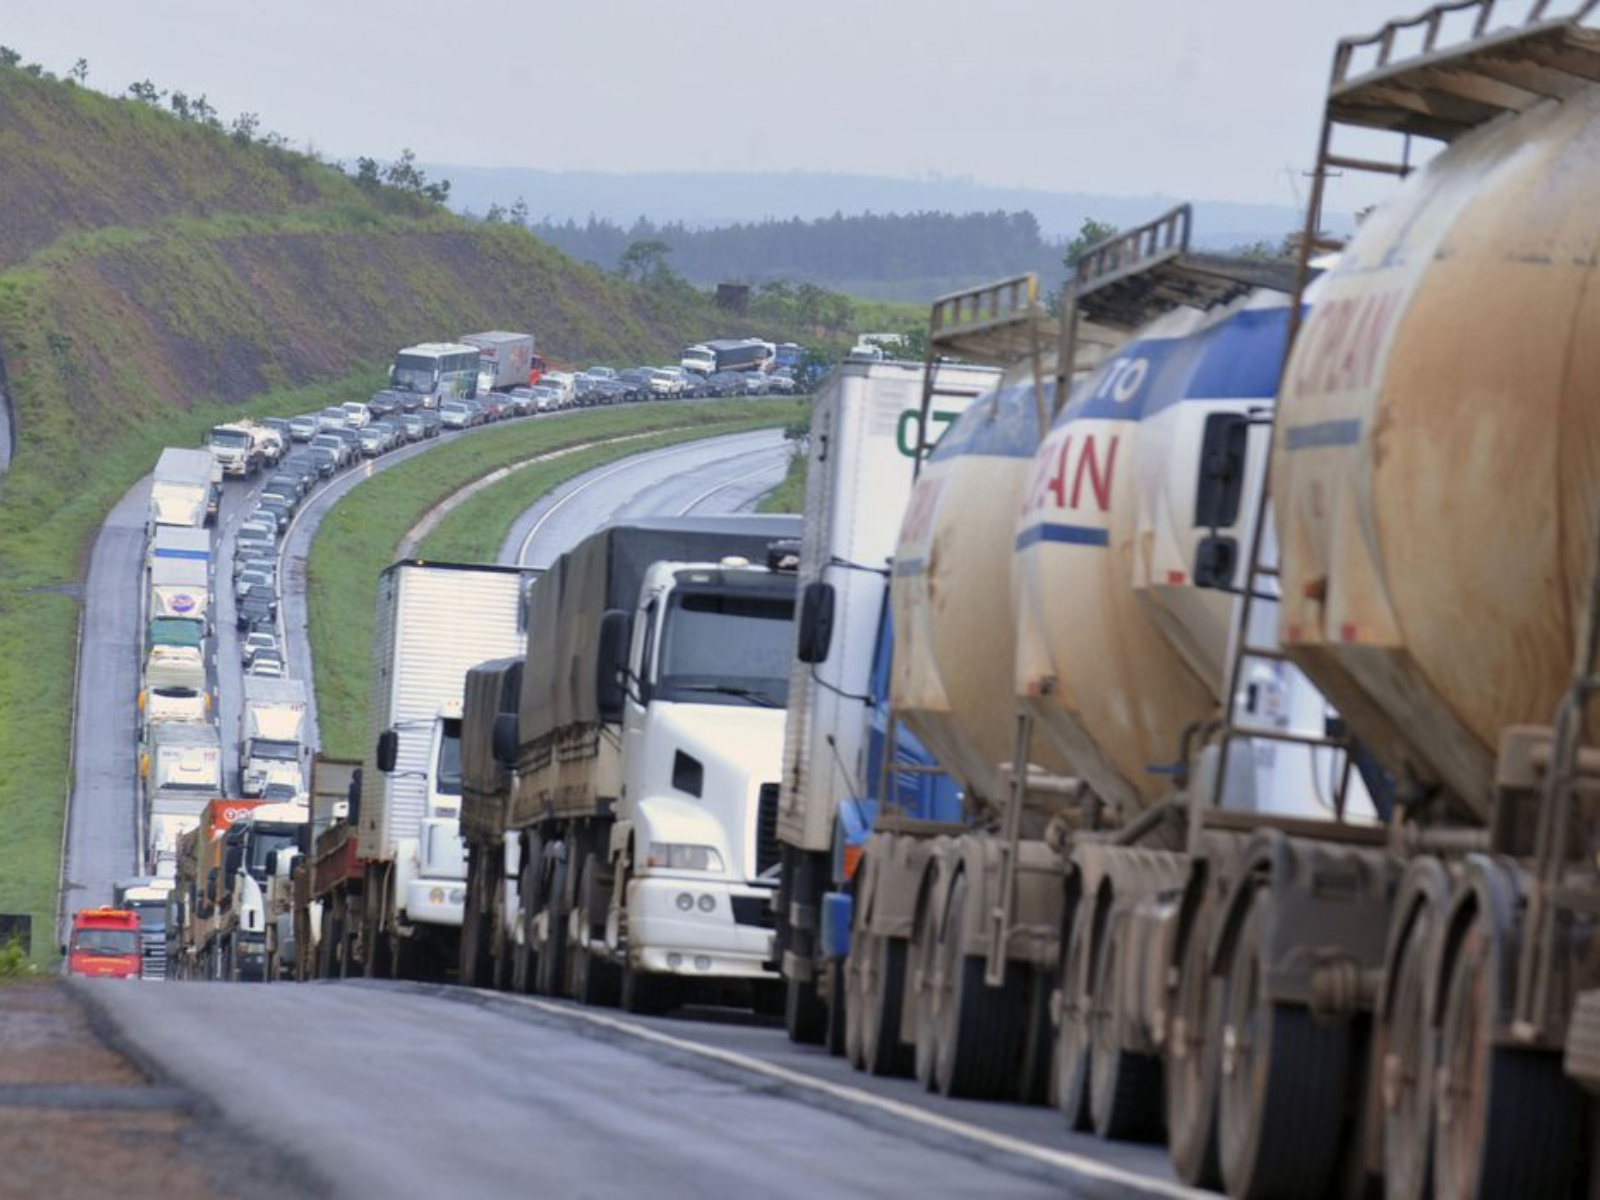 Caminhoneiros voltam a bloquear rodovias; Brasil registra 18 pontos de bloqueio em três estados